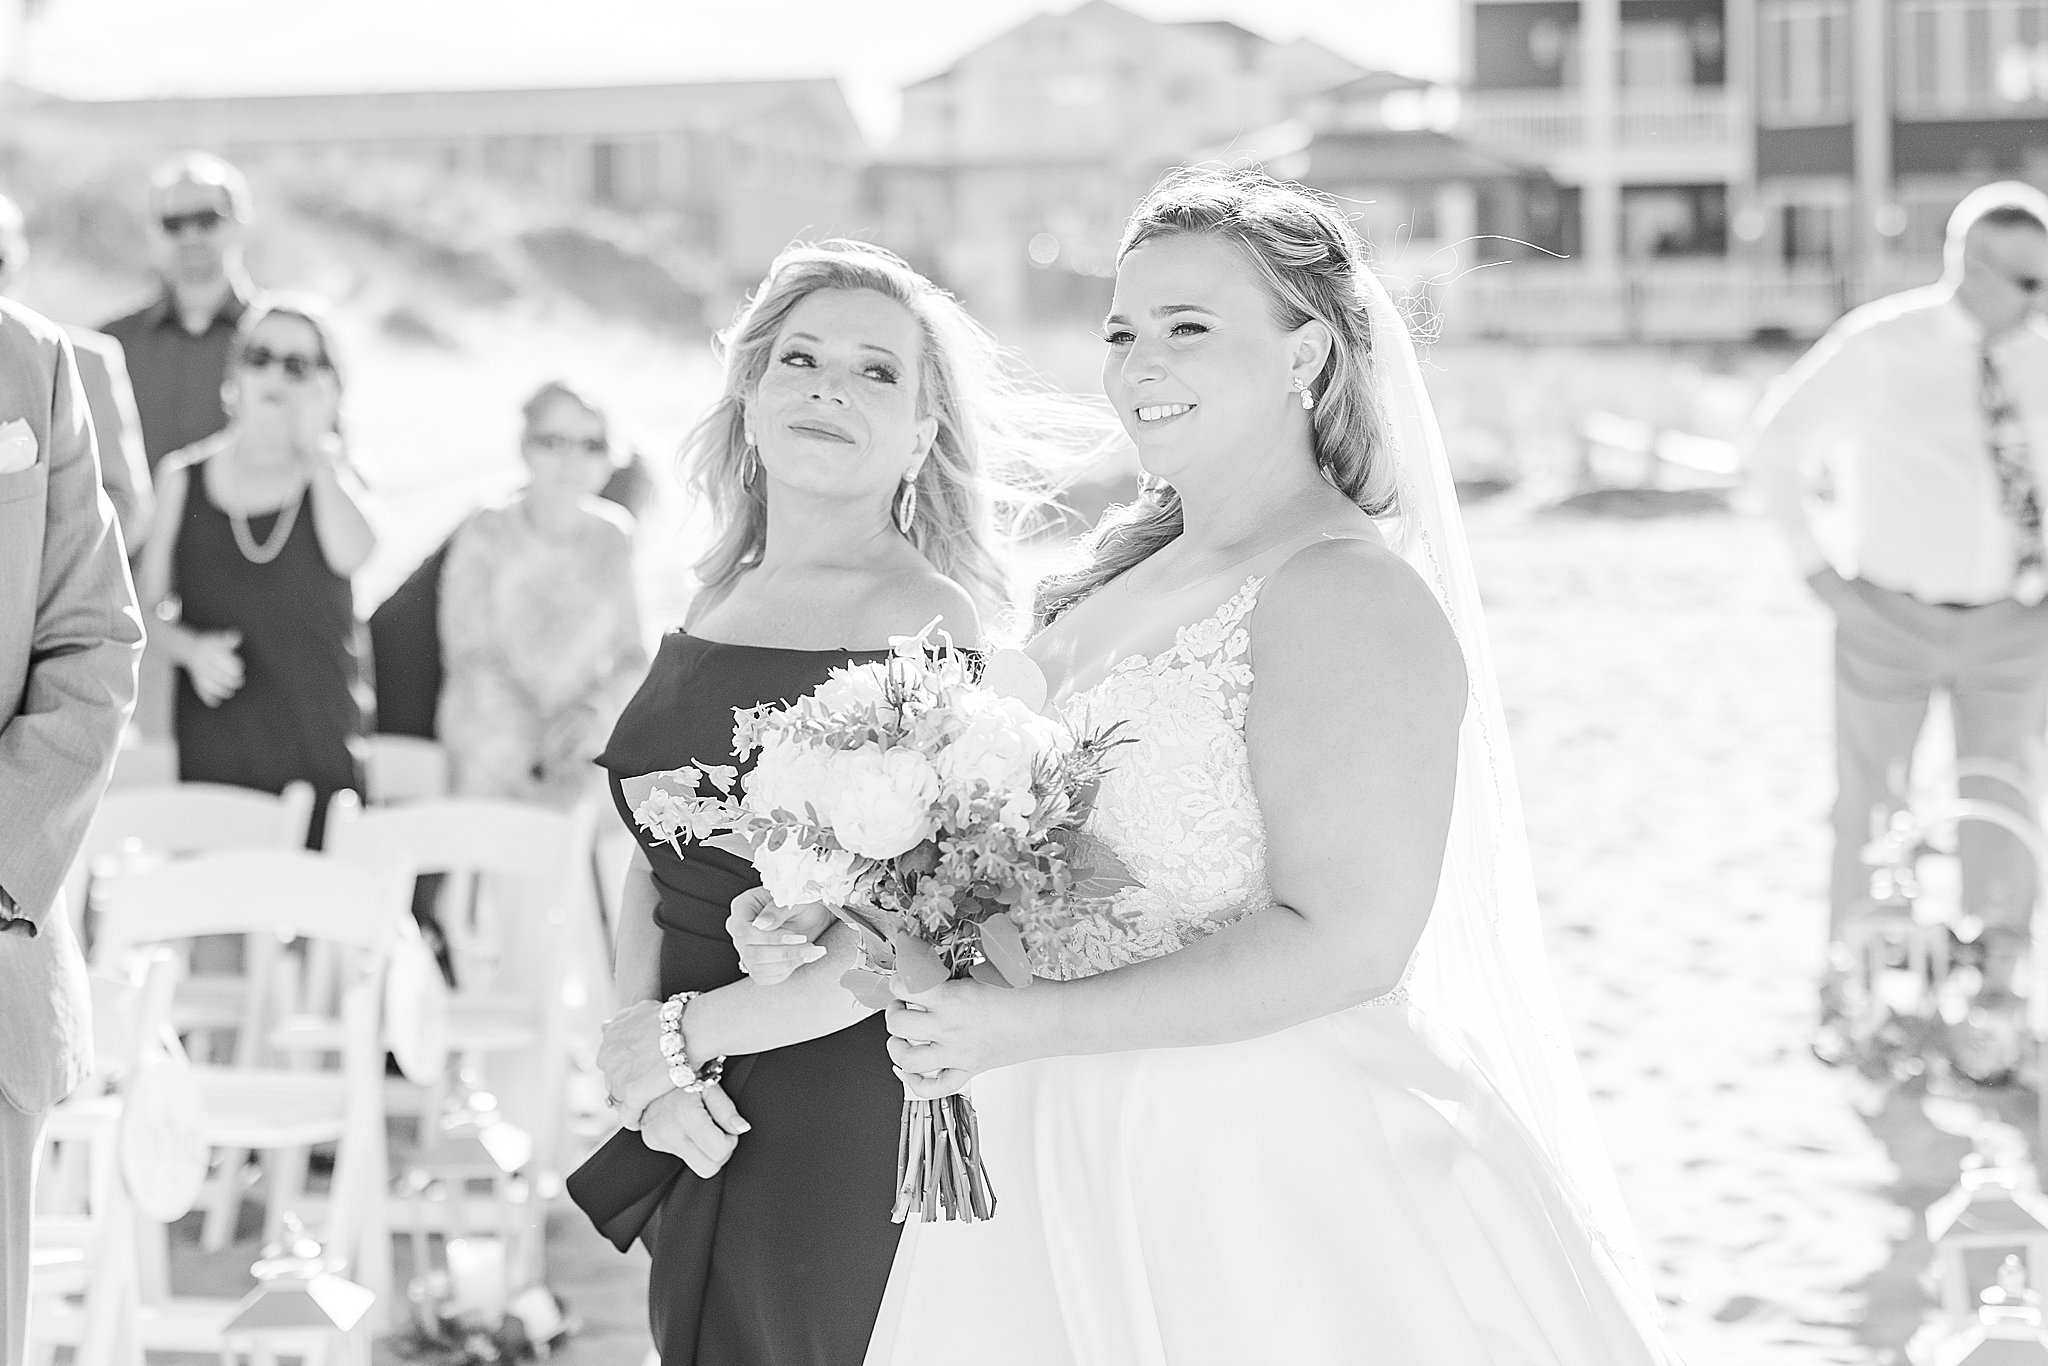 Sandbridge Virginia Beach Wedding